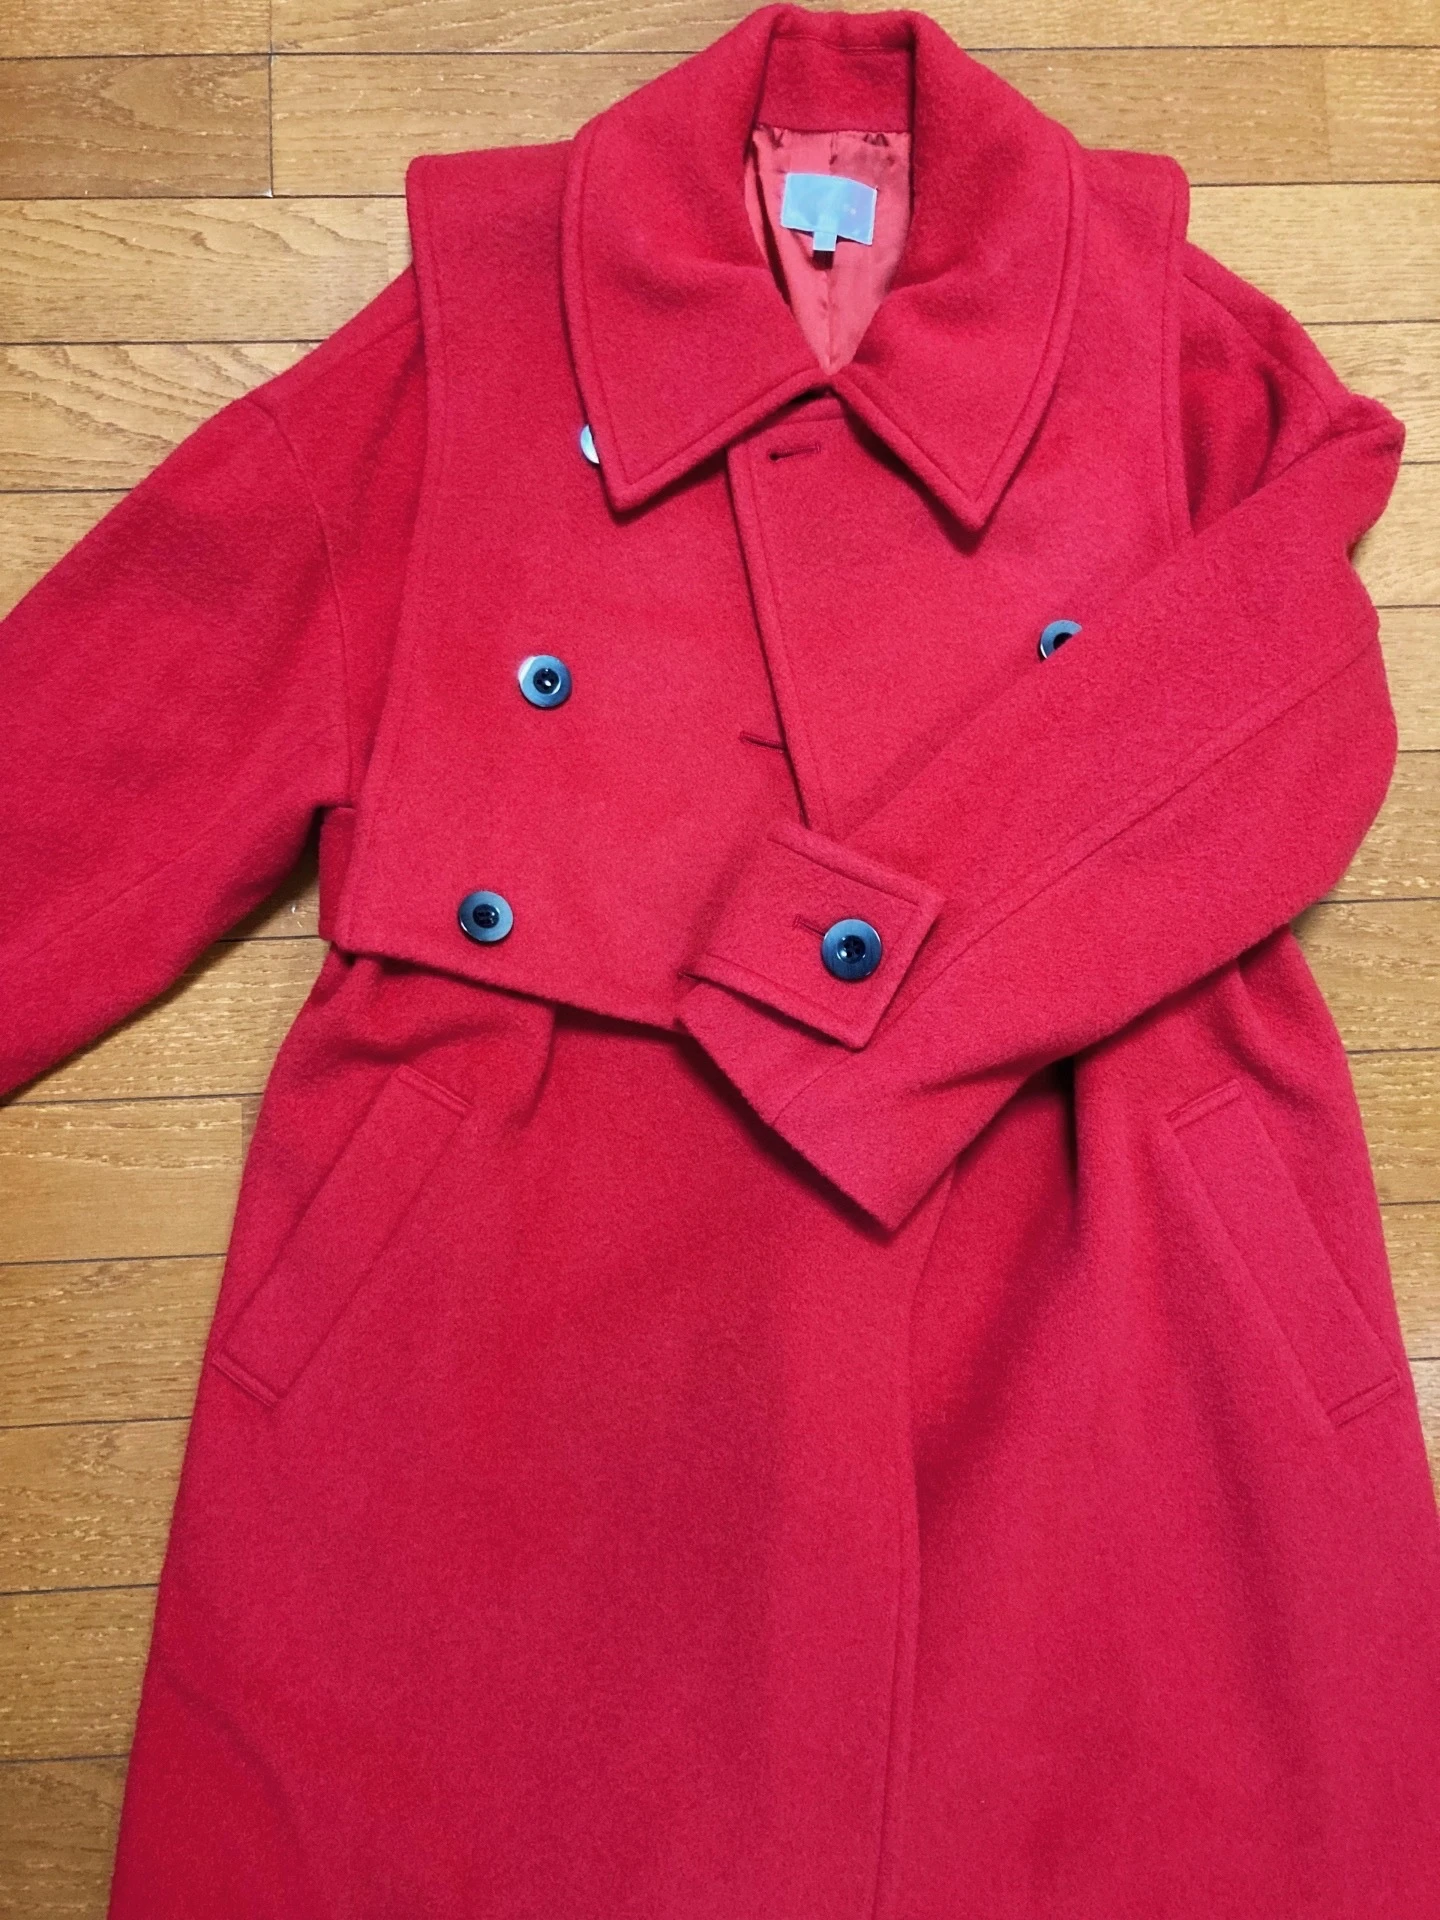 『rienda』赤のロングコート。ベスト状のパーツもついていて暖かく着られる。